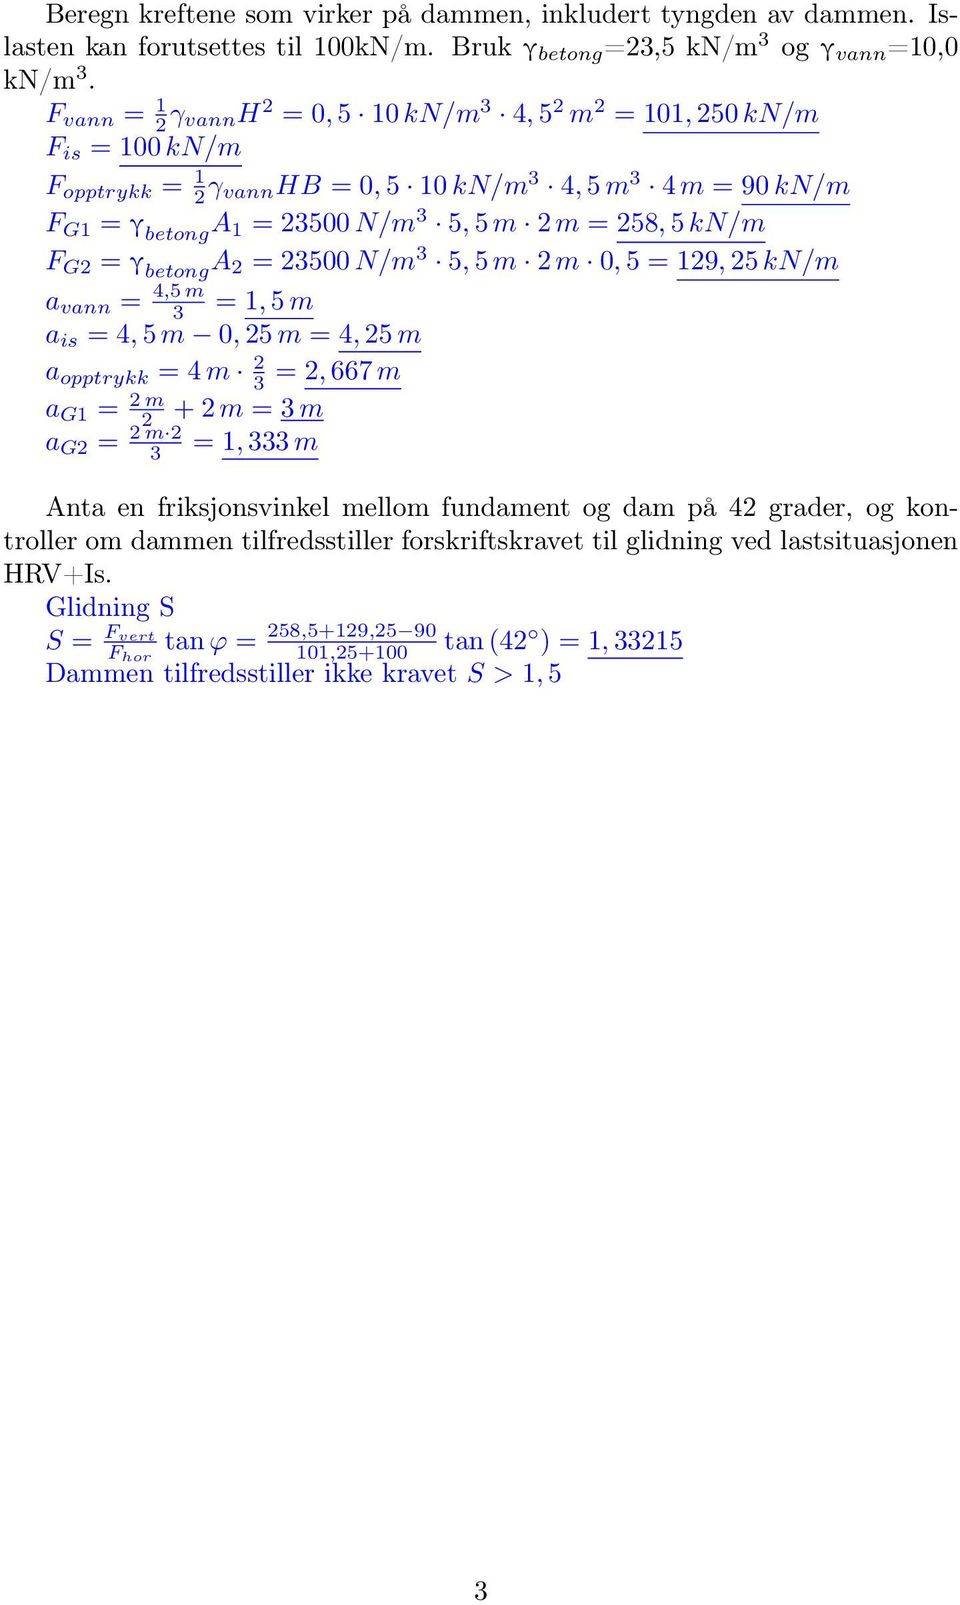 F G2 = γ betong A 2 = 2500 N/m 5, 5 m 2 m 0, 5 = 129, 25 kn/m a vann = 4,5 m = 1, 5 m a is = 4, 5 m 0, 25 m = 4, 25 m a opptrykk = 4 m 2 = 2, 667 m a G1 = 2 m 2 + 2 m = m a G2 = 2 m 2 = 1, m Anta en